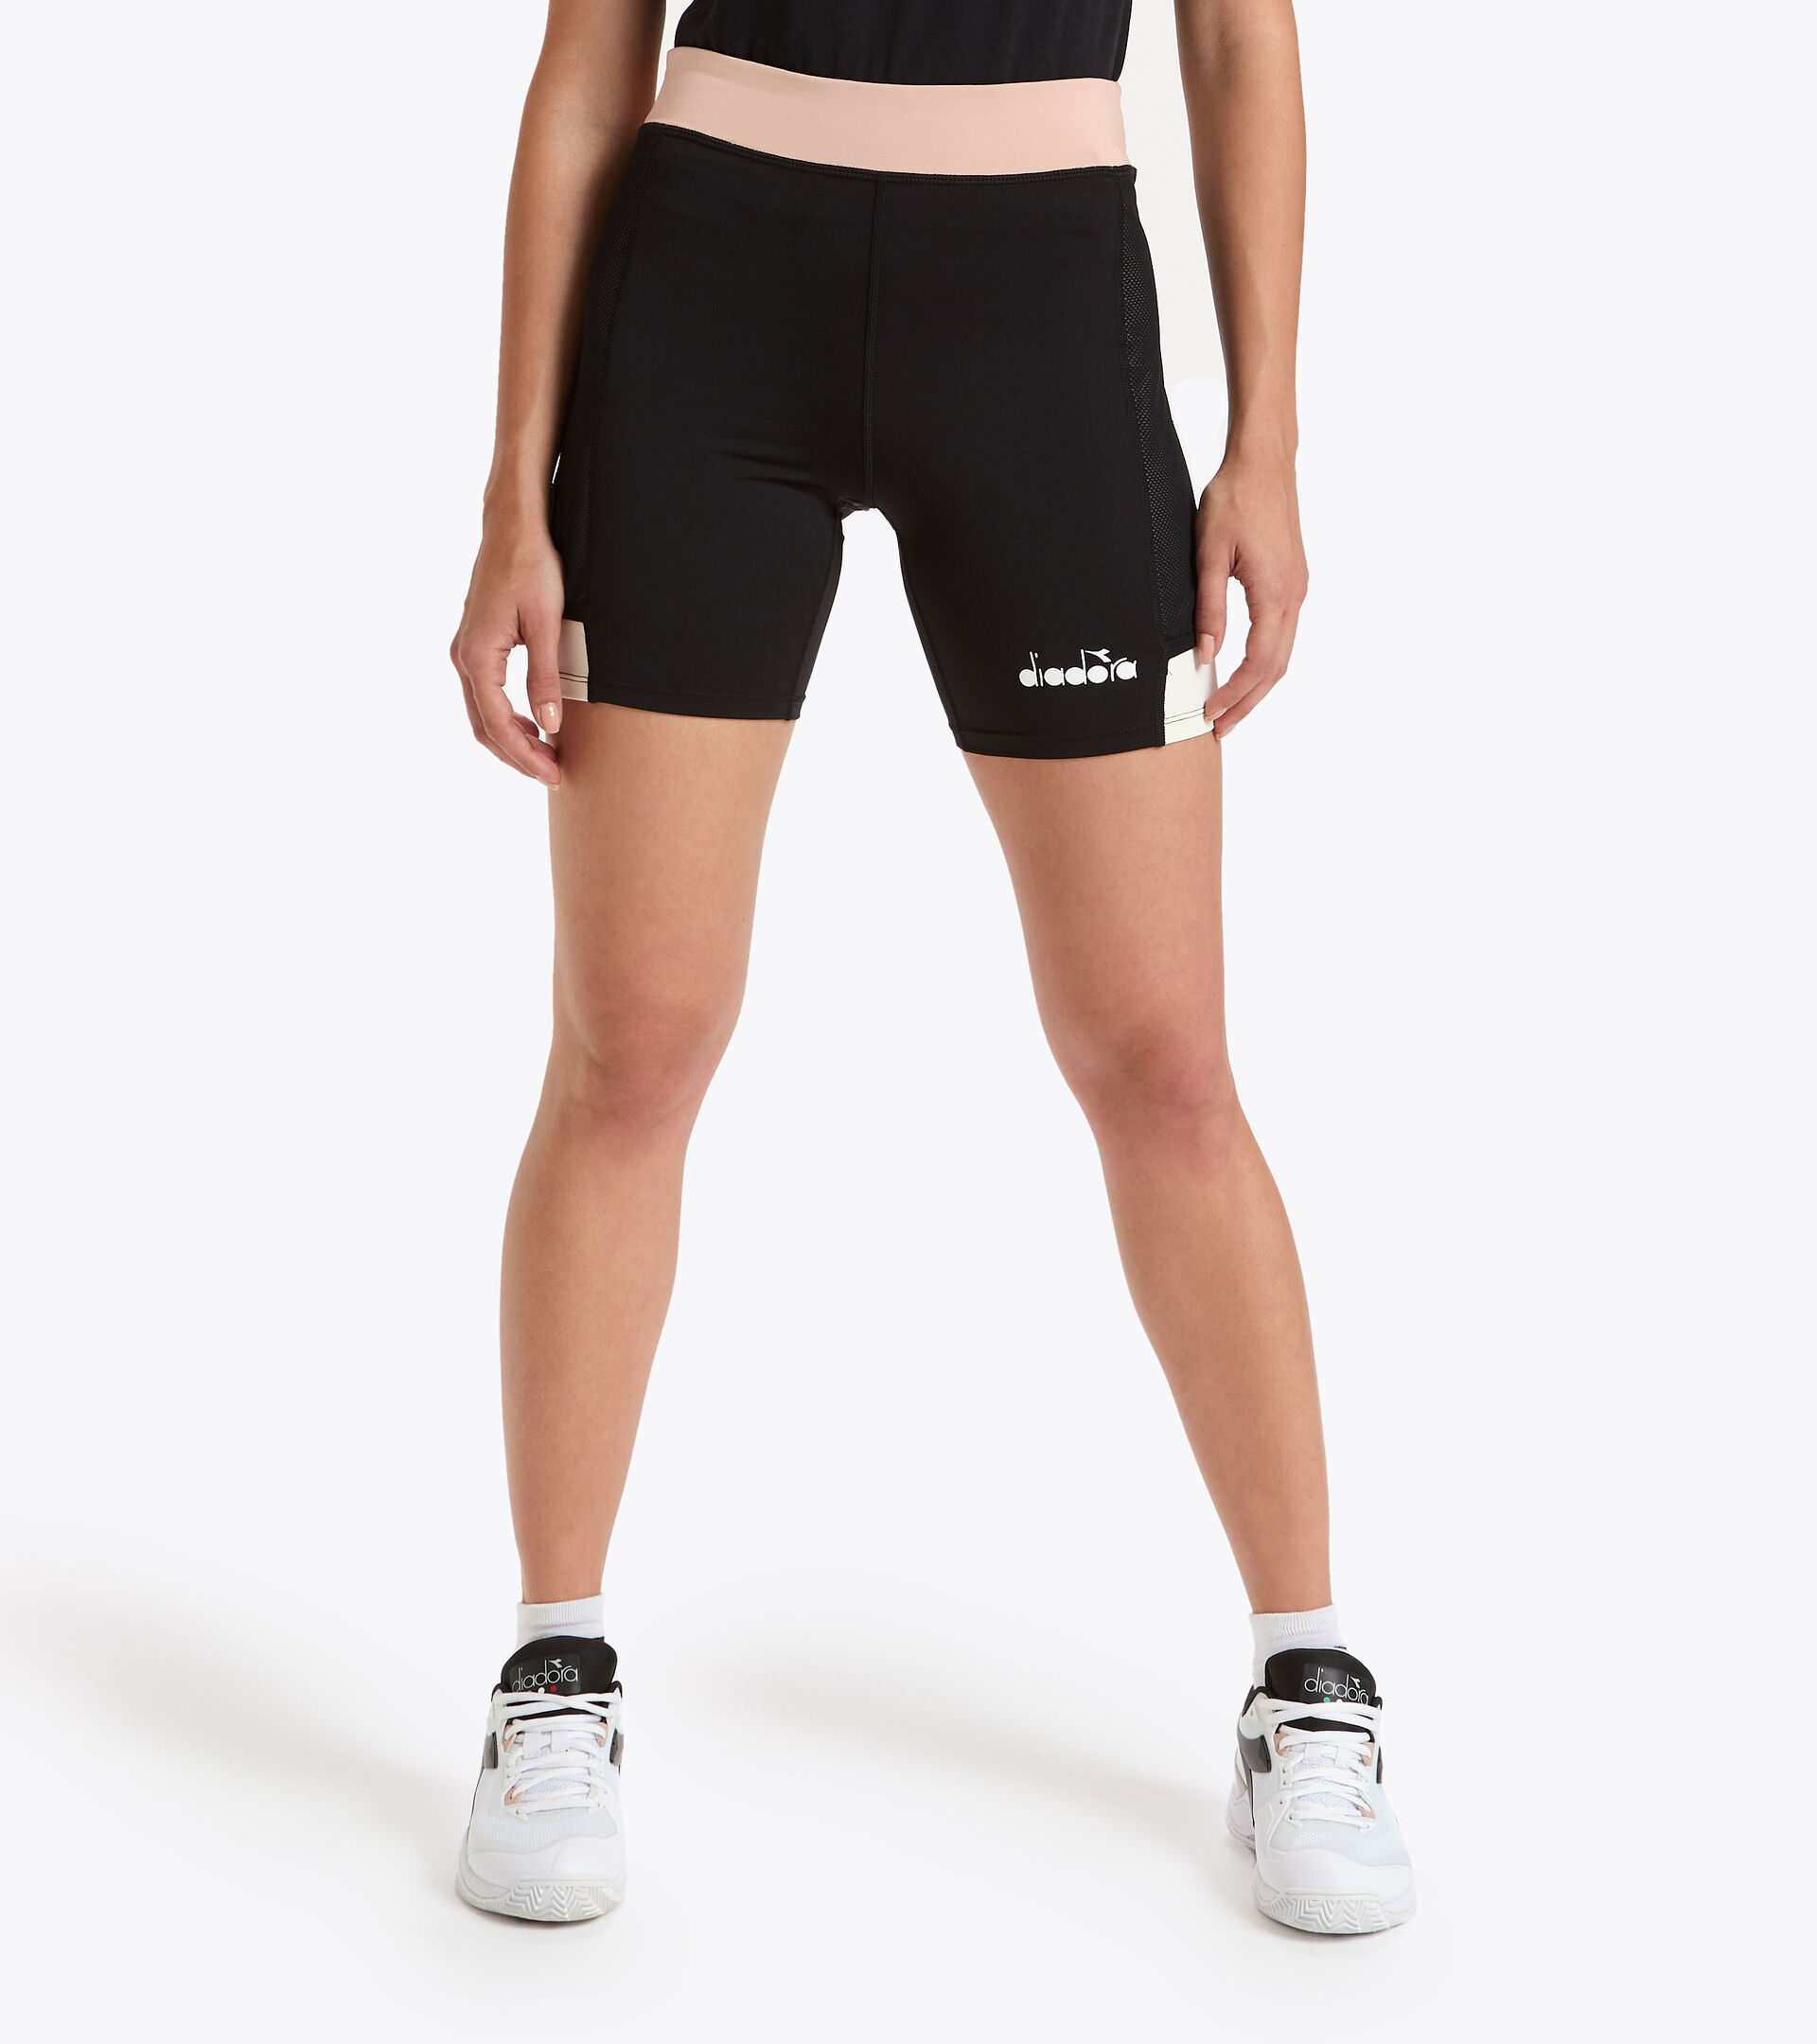 Pantalones cortos de tenis - Mujer L. SHORT TIGHTS POCKET NEGRO/ROSA CAOBA - Diadora